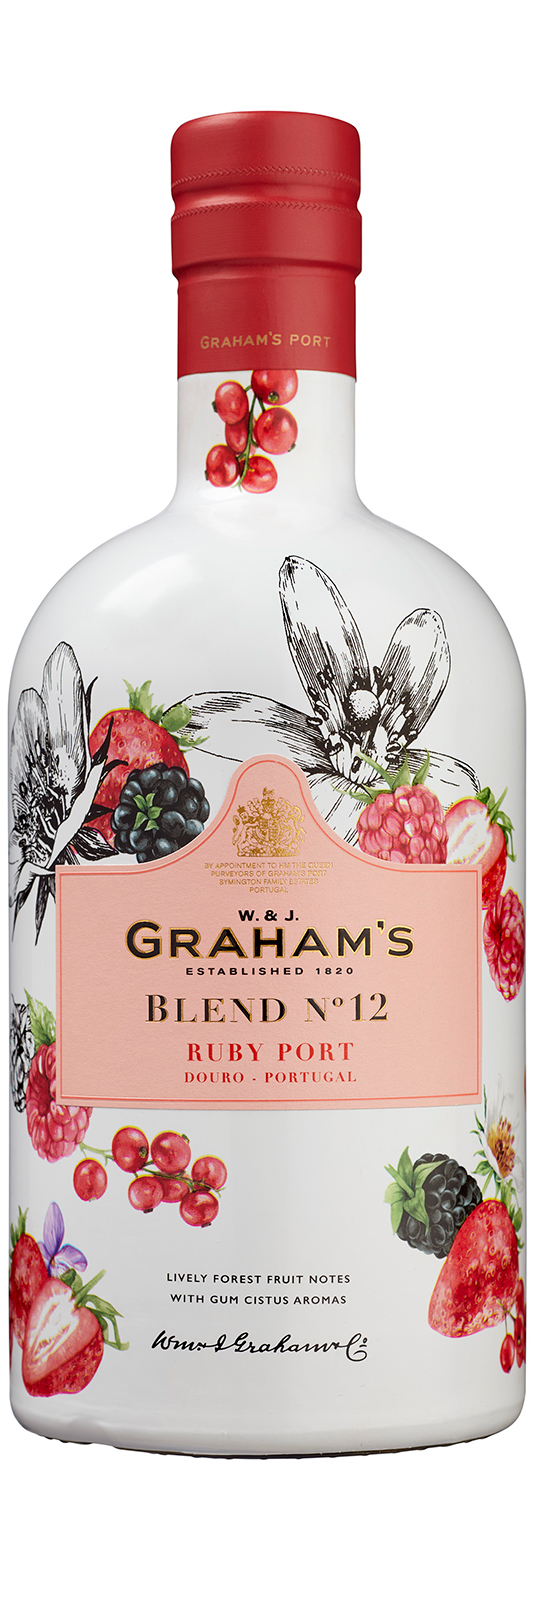 Graham's Blend N°12 Ruby Port 19°